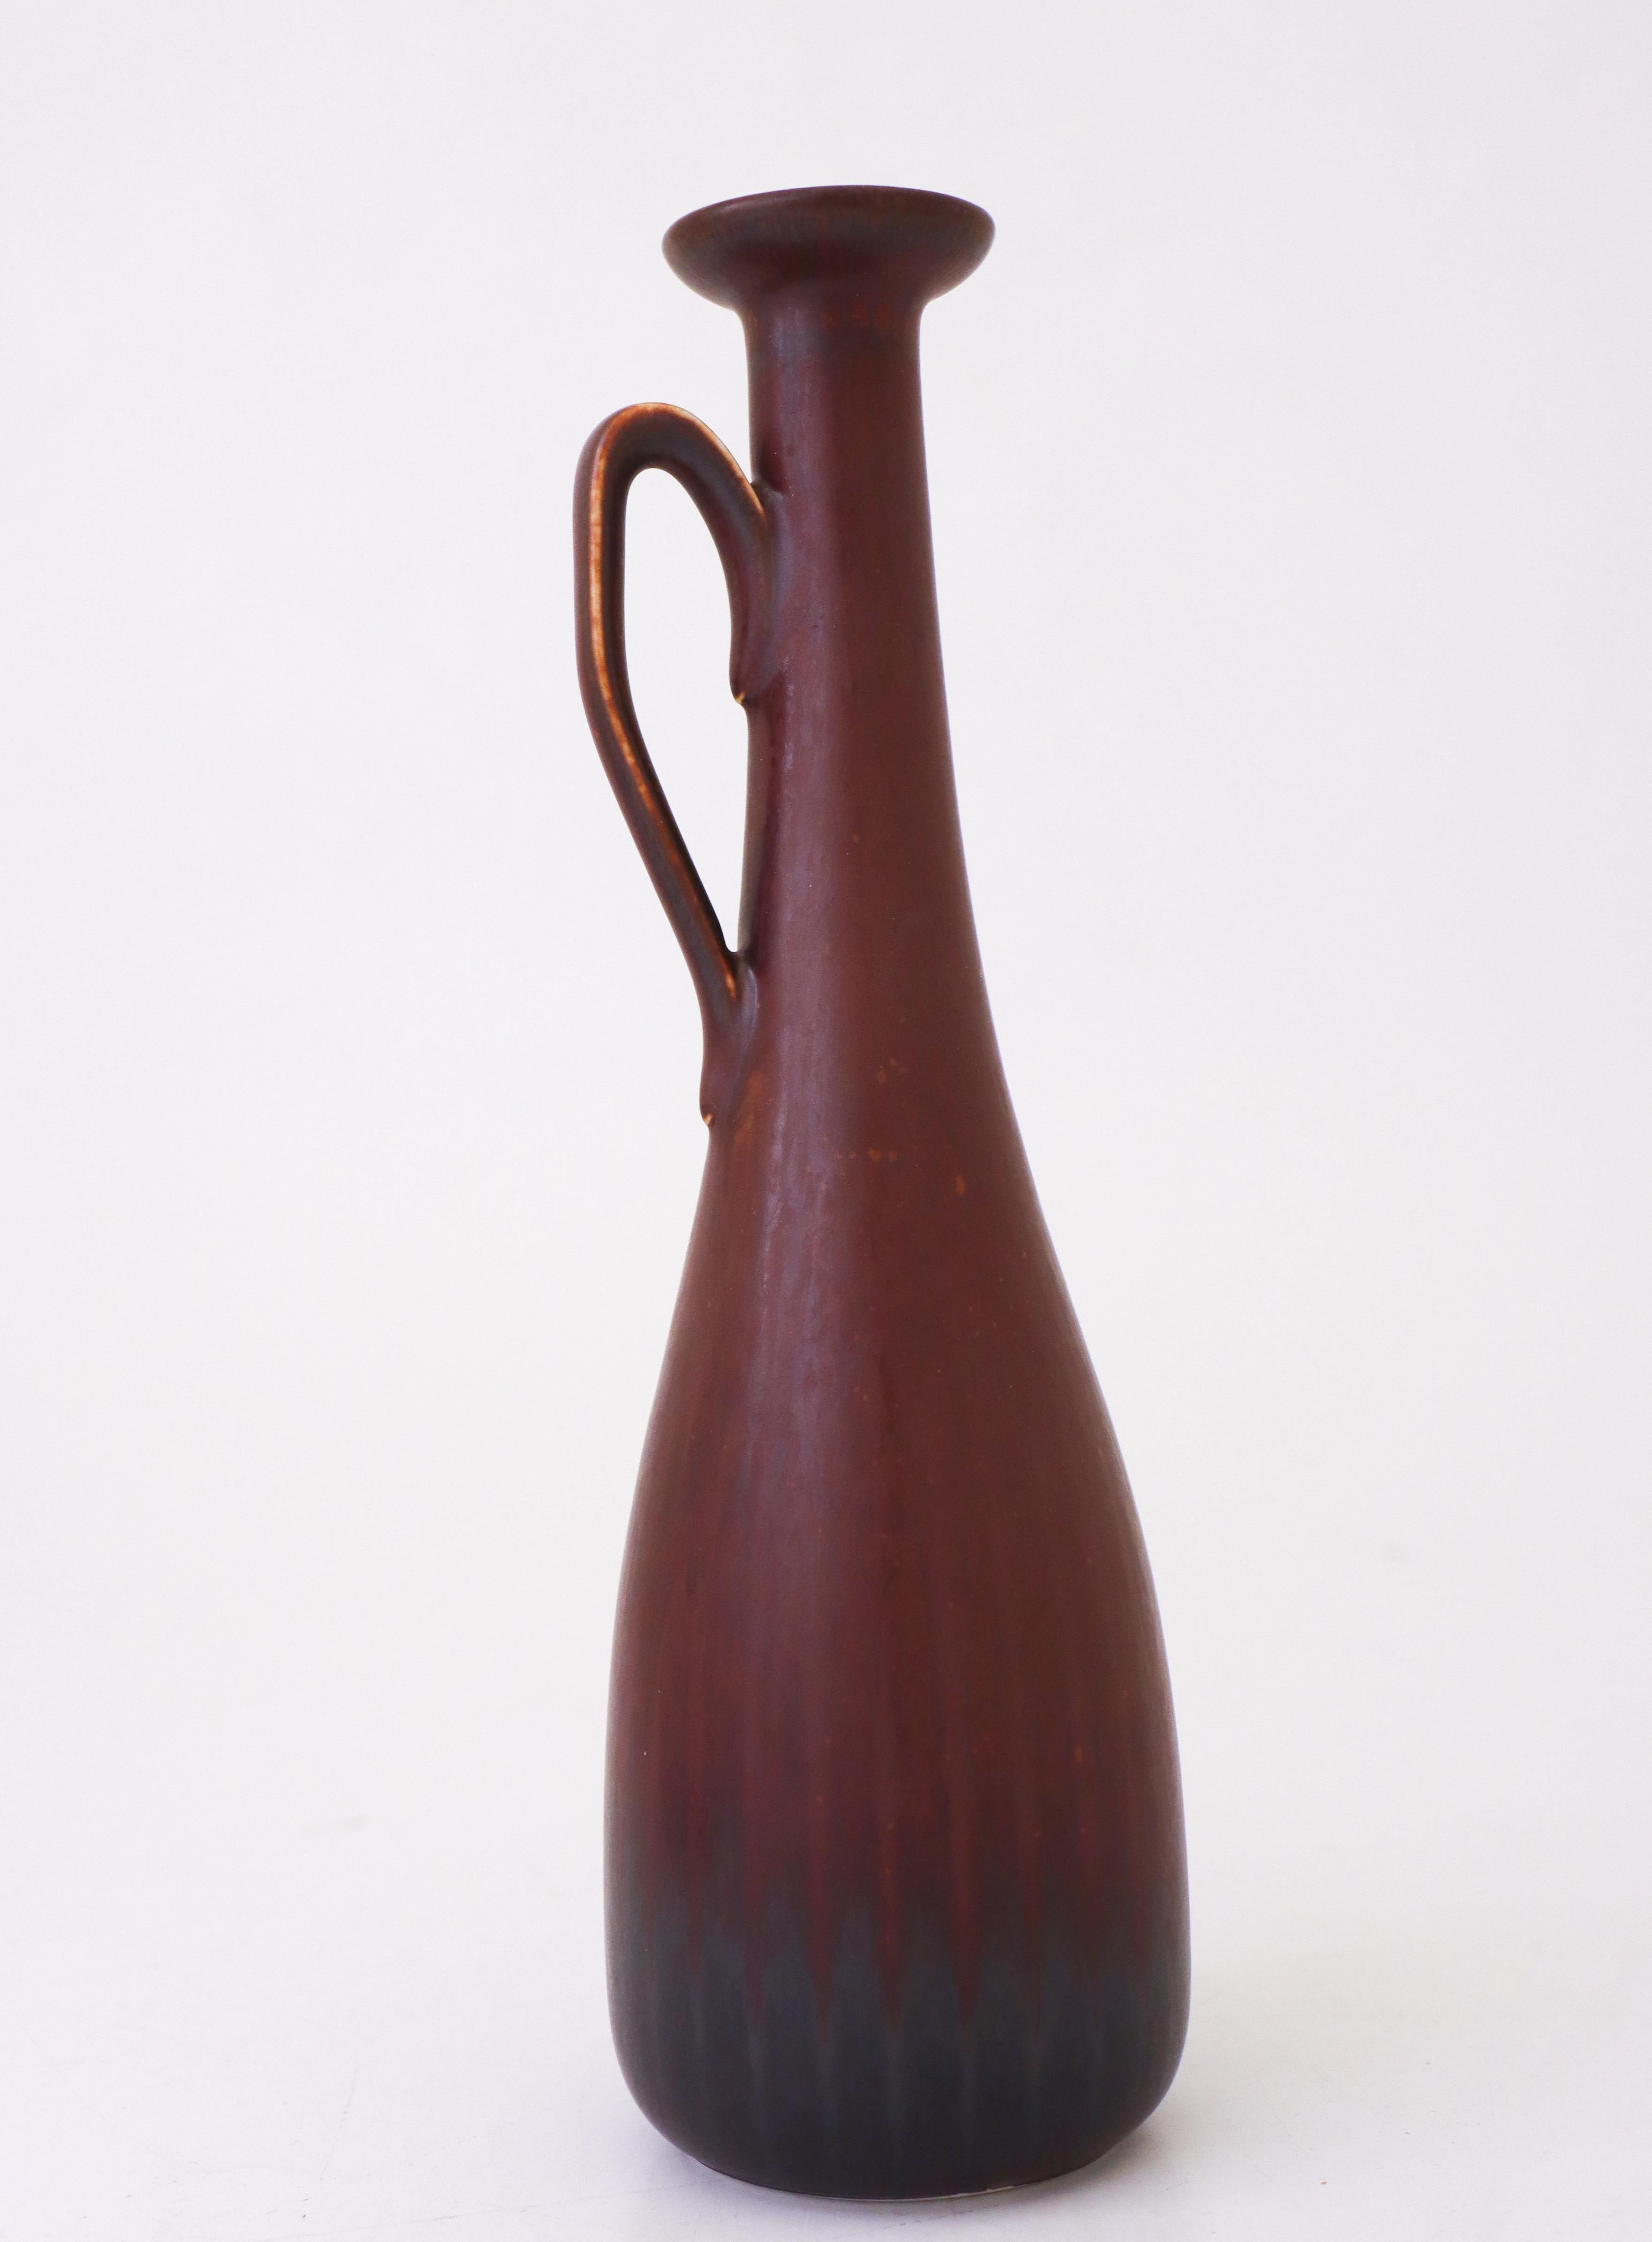 Die braune Vase wurde von Gunnar Nylund in Rörstrand entworfen. Sie ist 25 cm hoch und hat einen Durchmesser von 7 cm (2,8